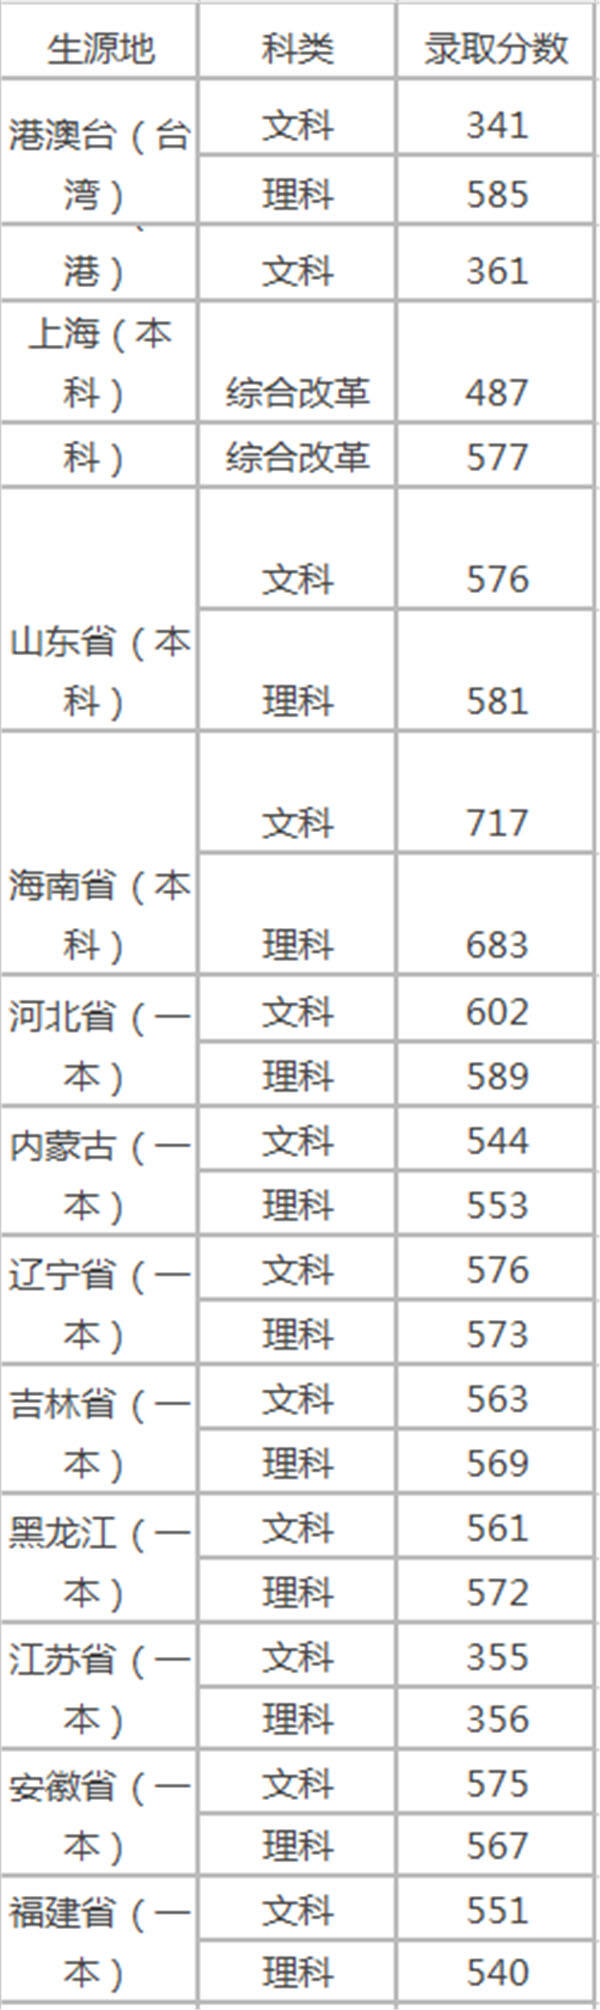 2018年上海立信会计金融学院录取分数线是多少